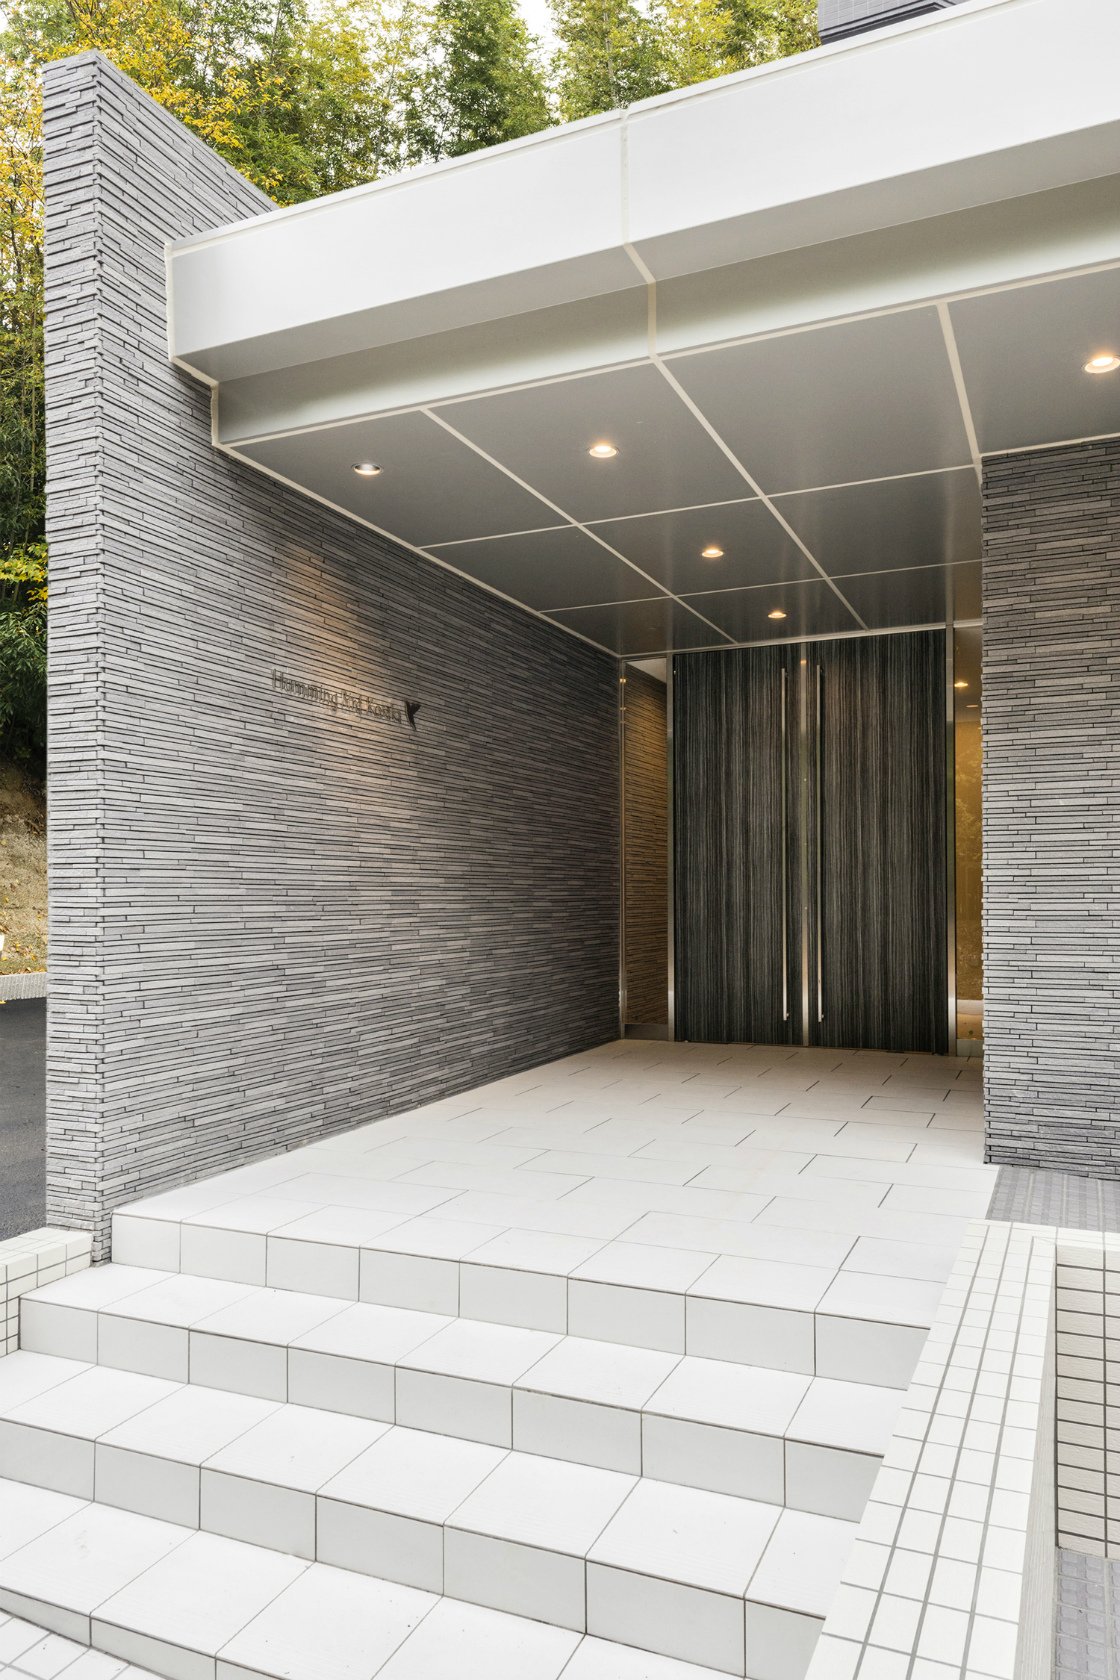 愛知県豊田市の賃貸マンションの凹凸のある外壁が高級感を出すエントランス